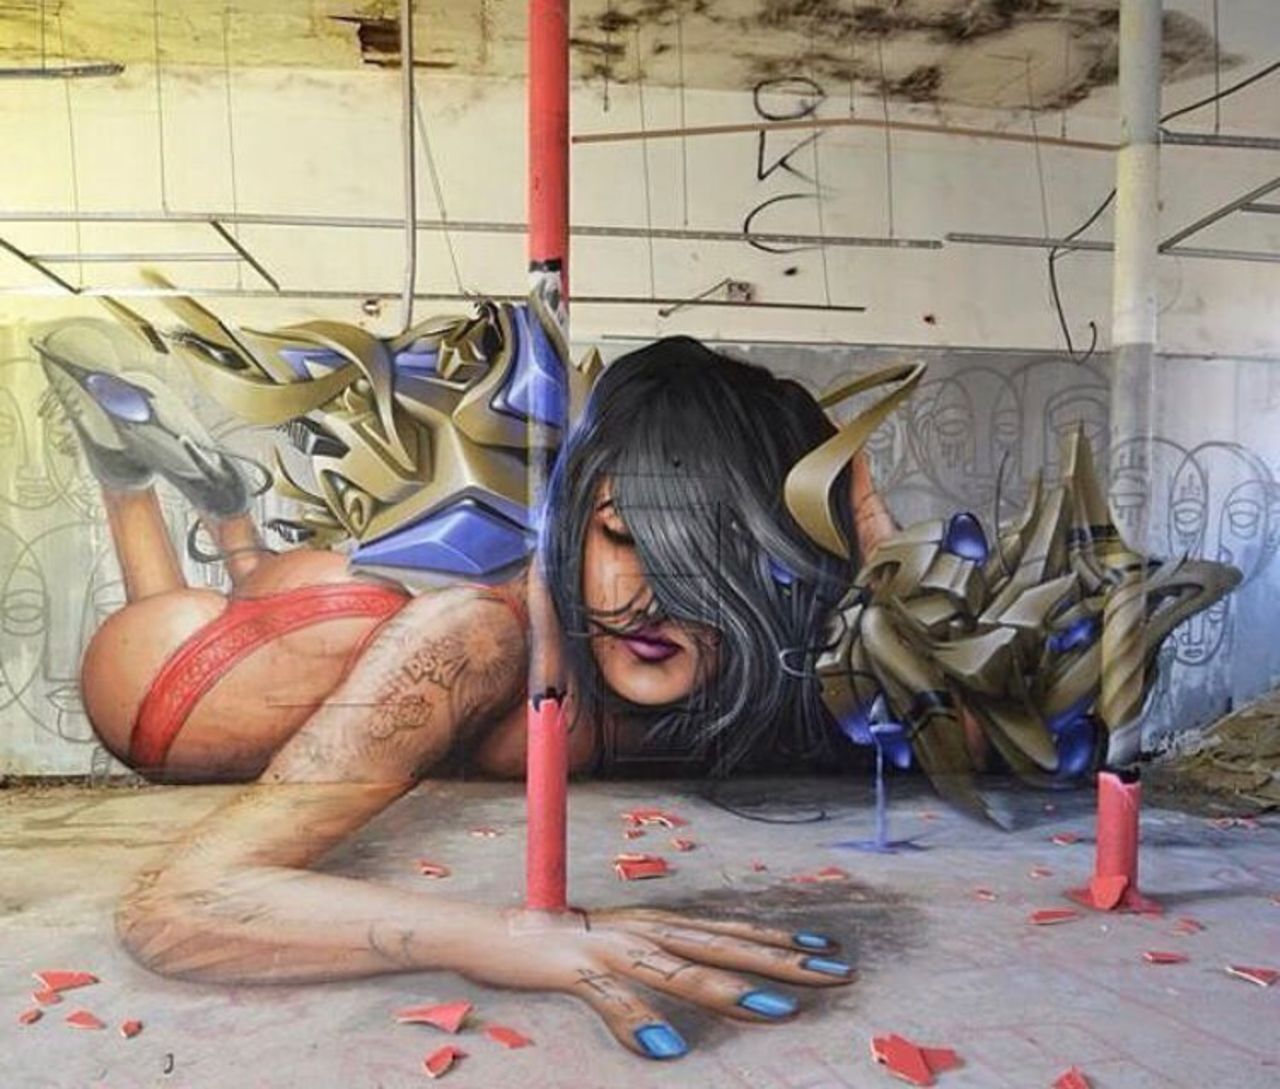 New work by Jeaze Oner #streetart #mural #graffiti #art https://t.co/4v2HrSeP0O